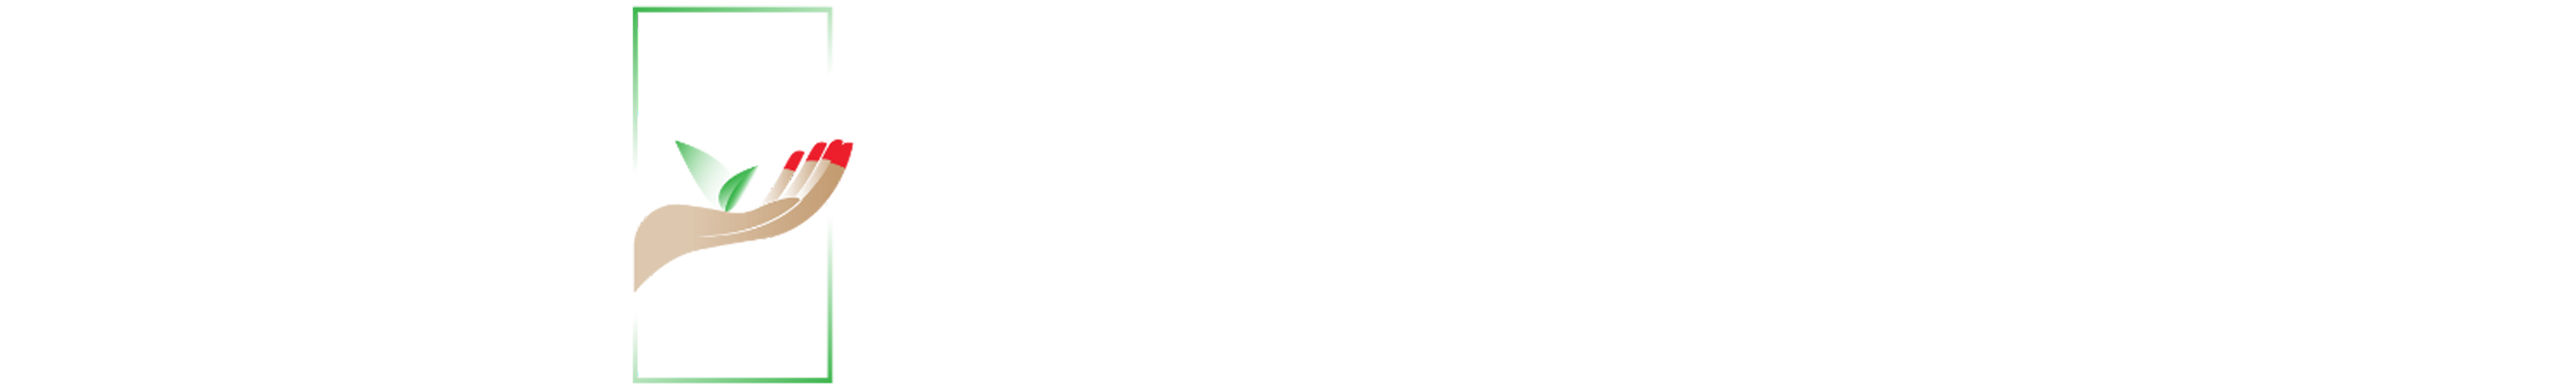 SvEcoLogo-logo